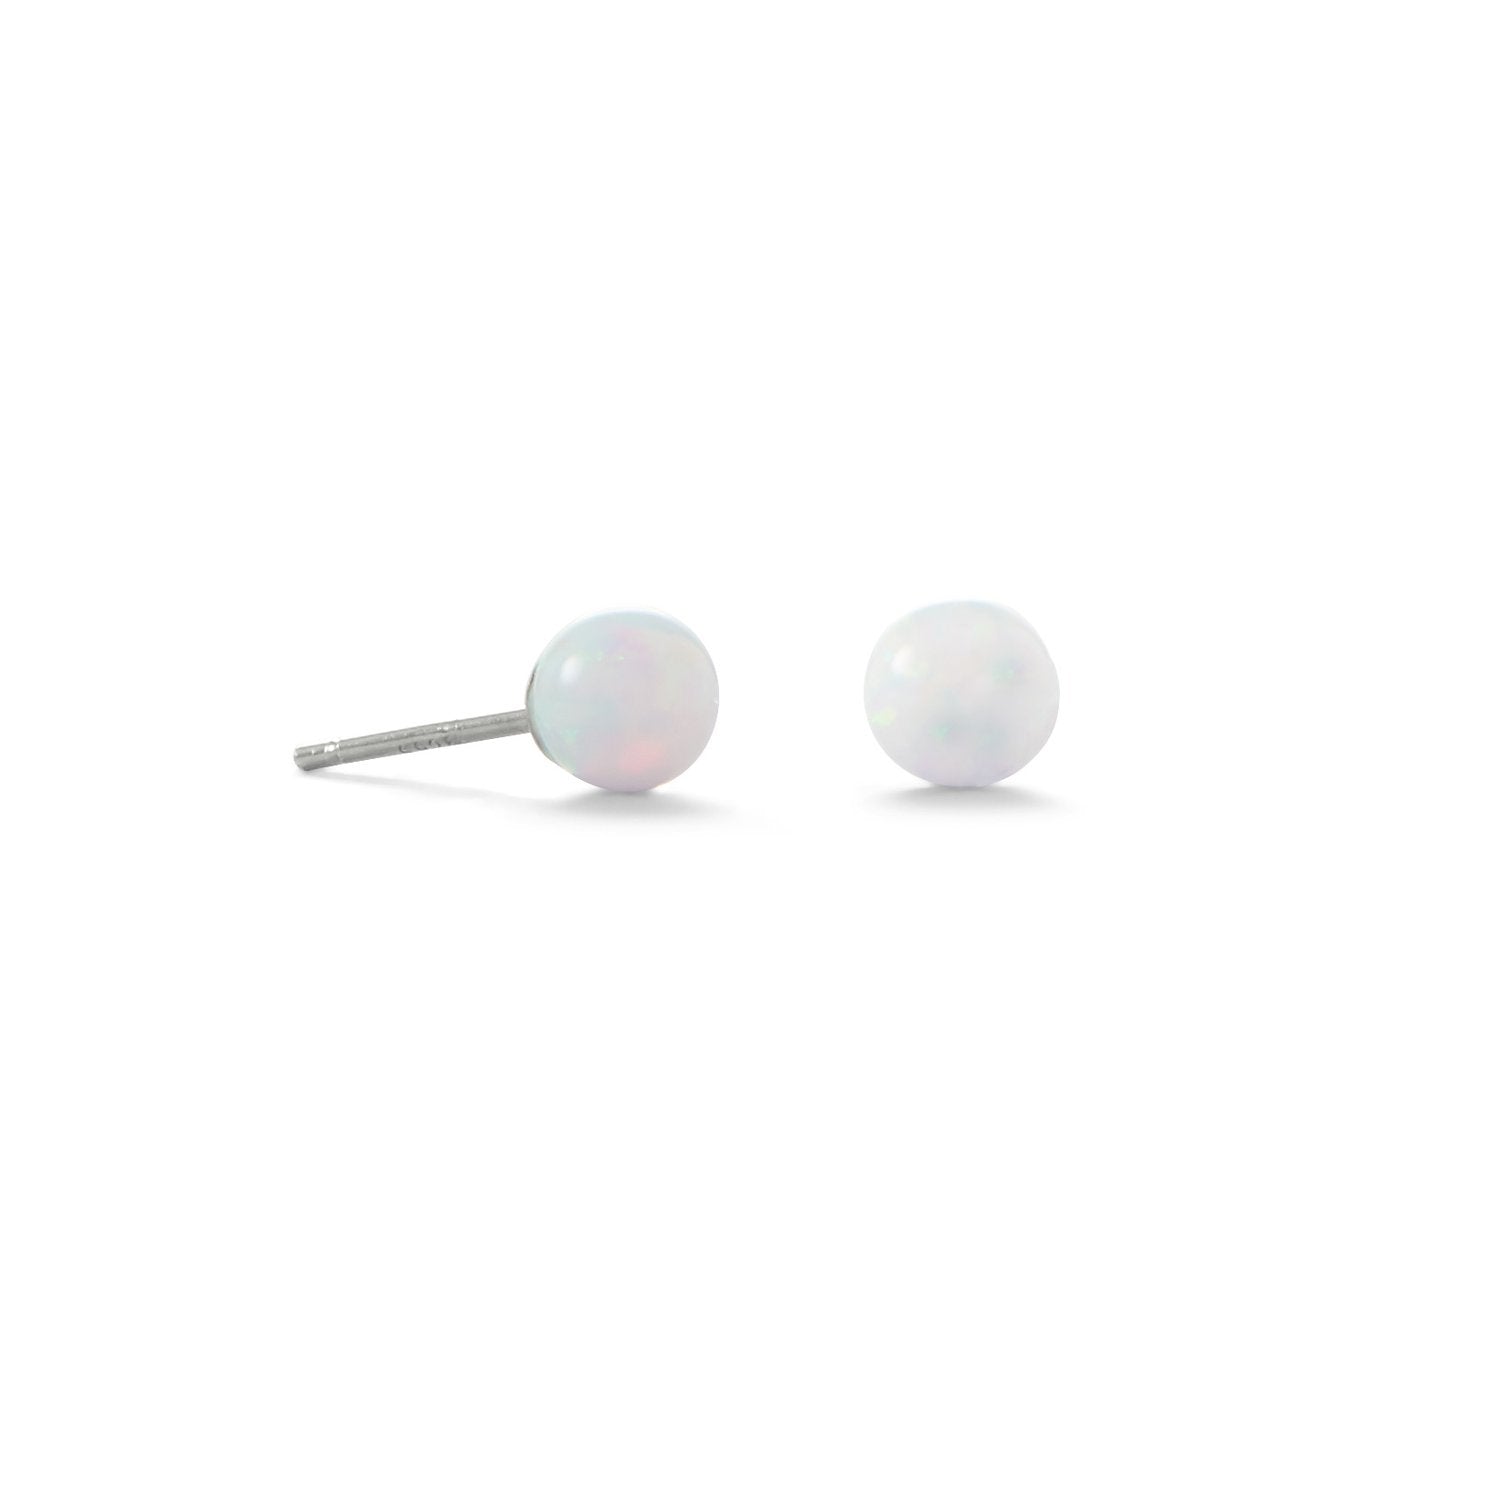 5mm White Synthetic Opal Stud Earrings - Joyeria Lady